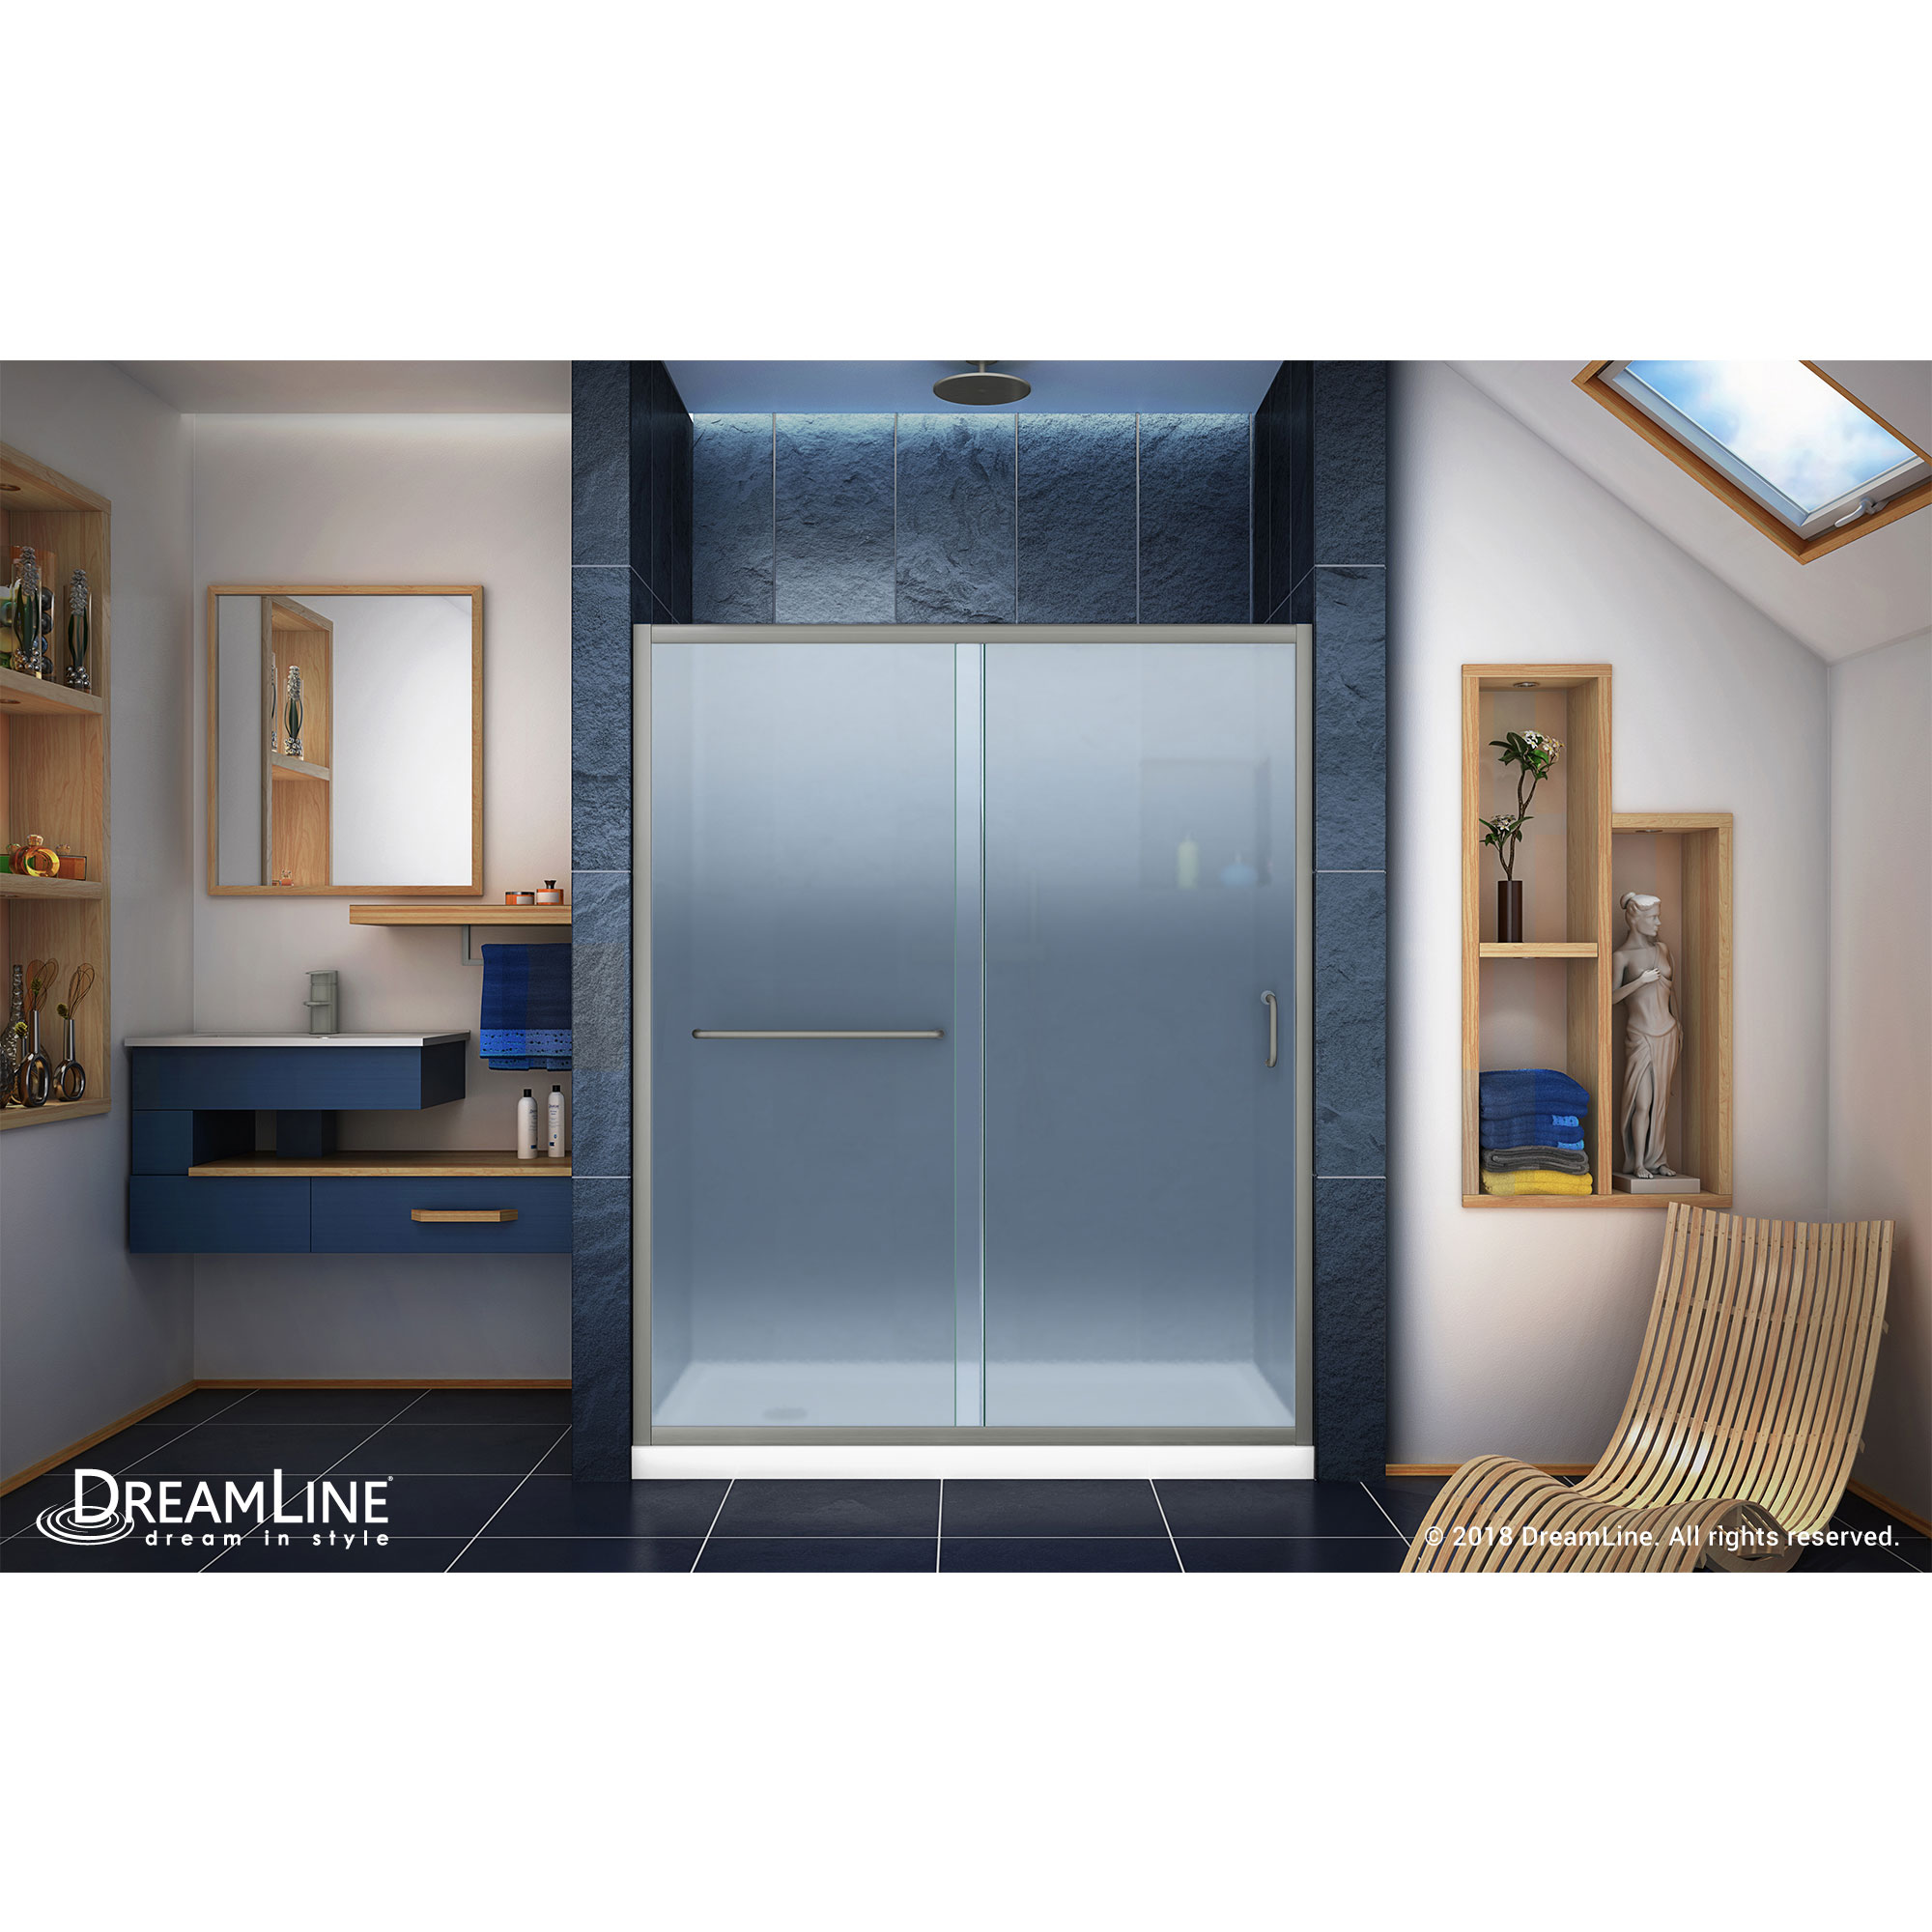 Infinity-Z Frameless Sliding Shower Door & SlimLine 34" by 60" Shower Base